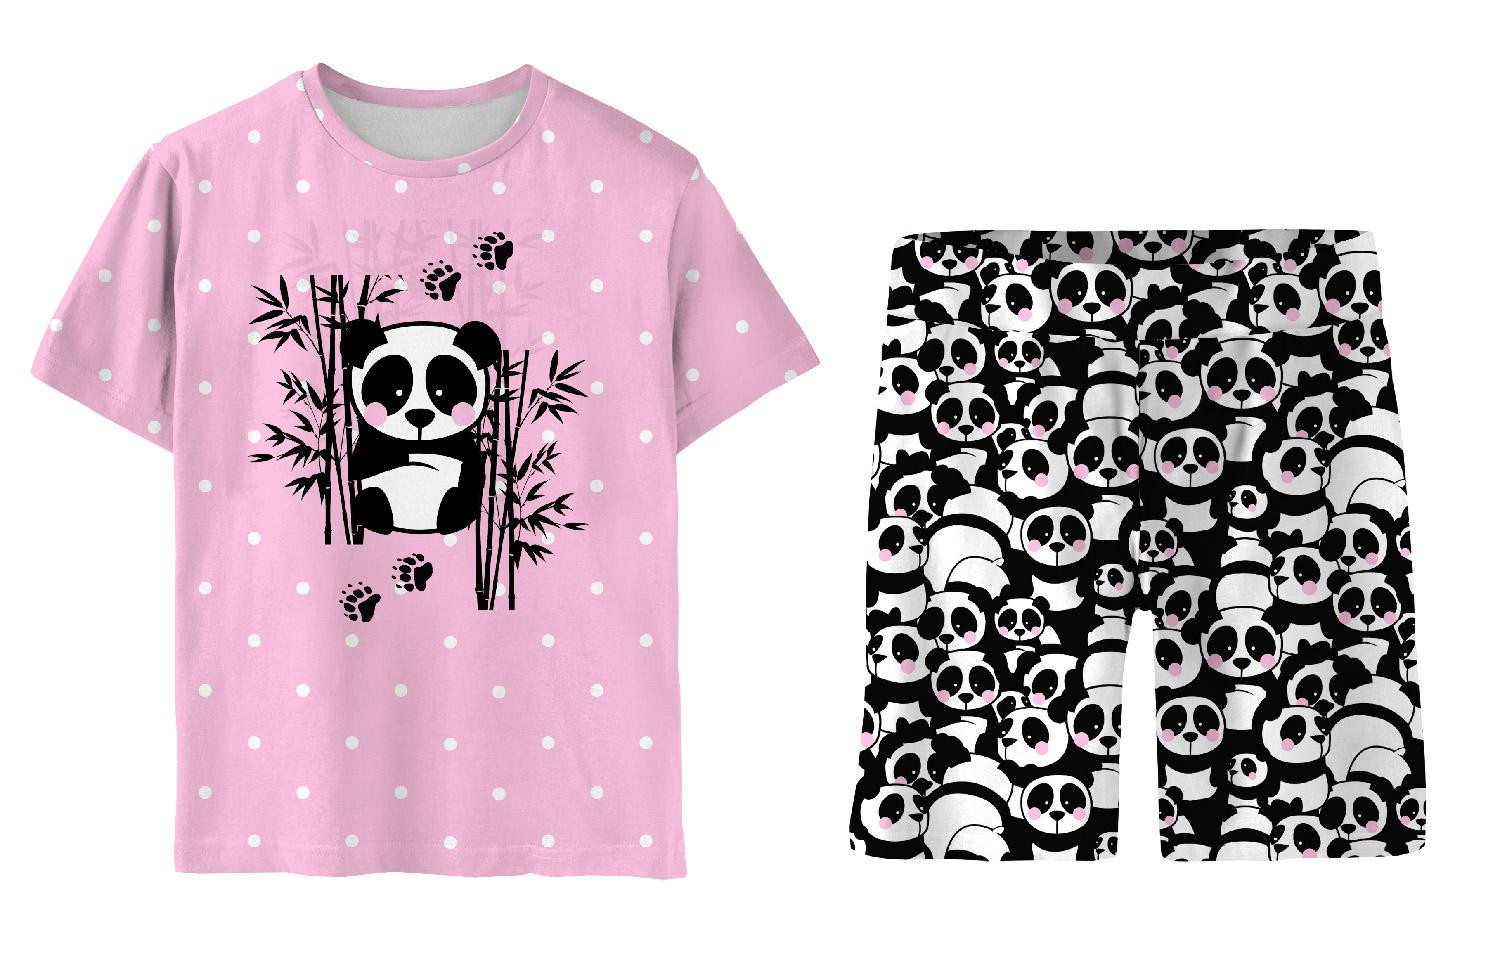 CHILDREN'S PAJAMAS "ADA" - PANDA / pink - sewing set